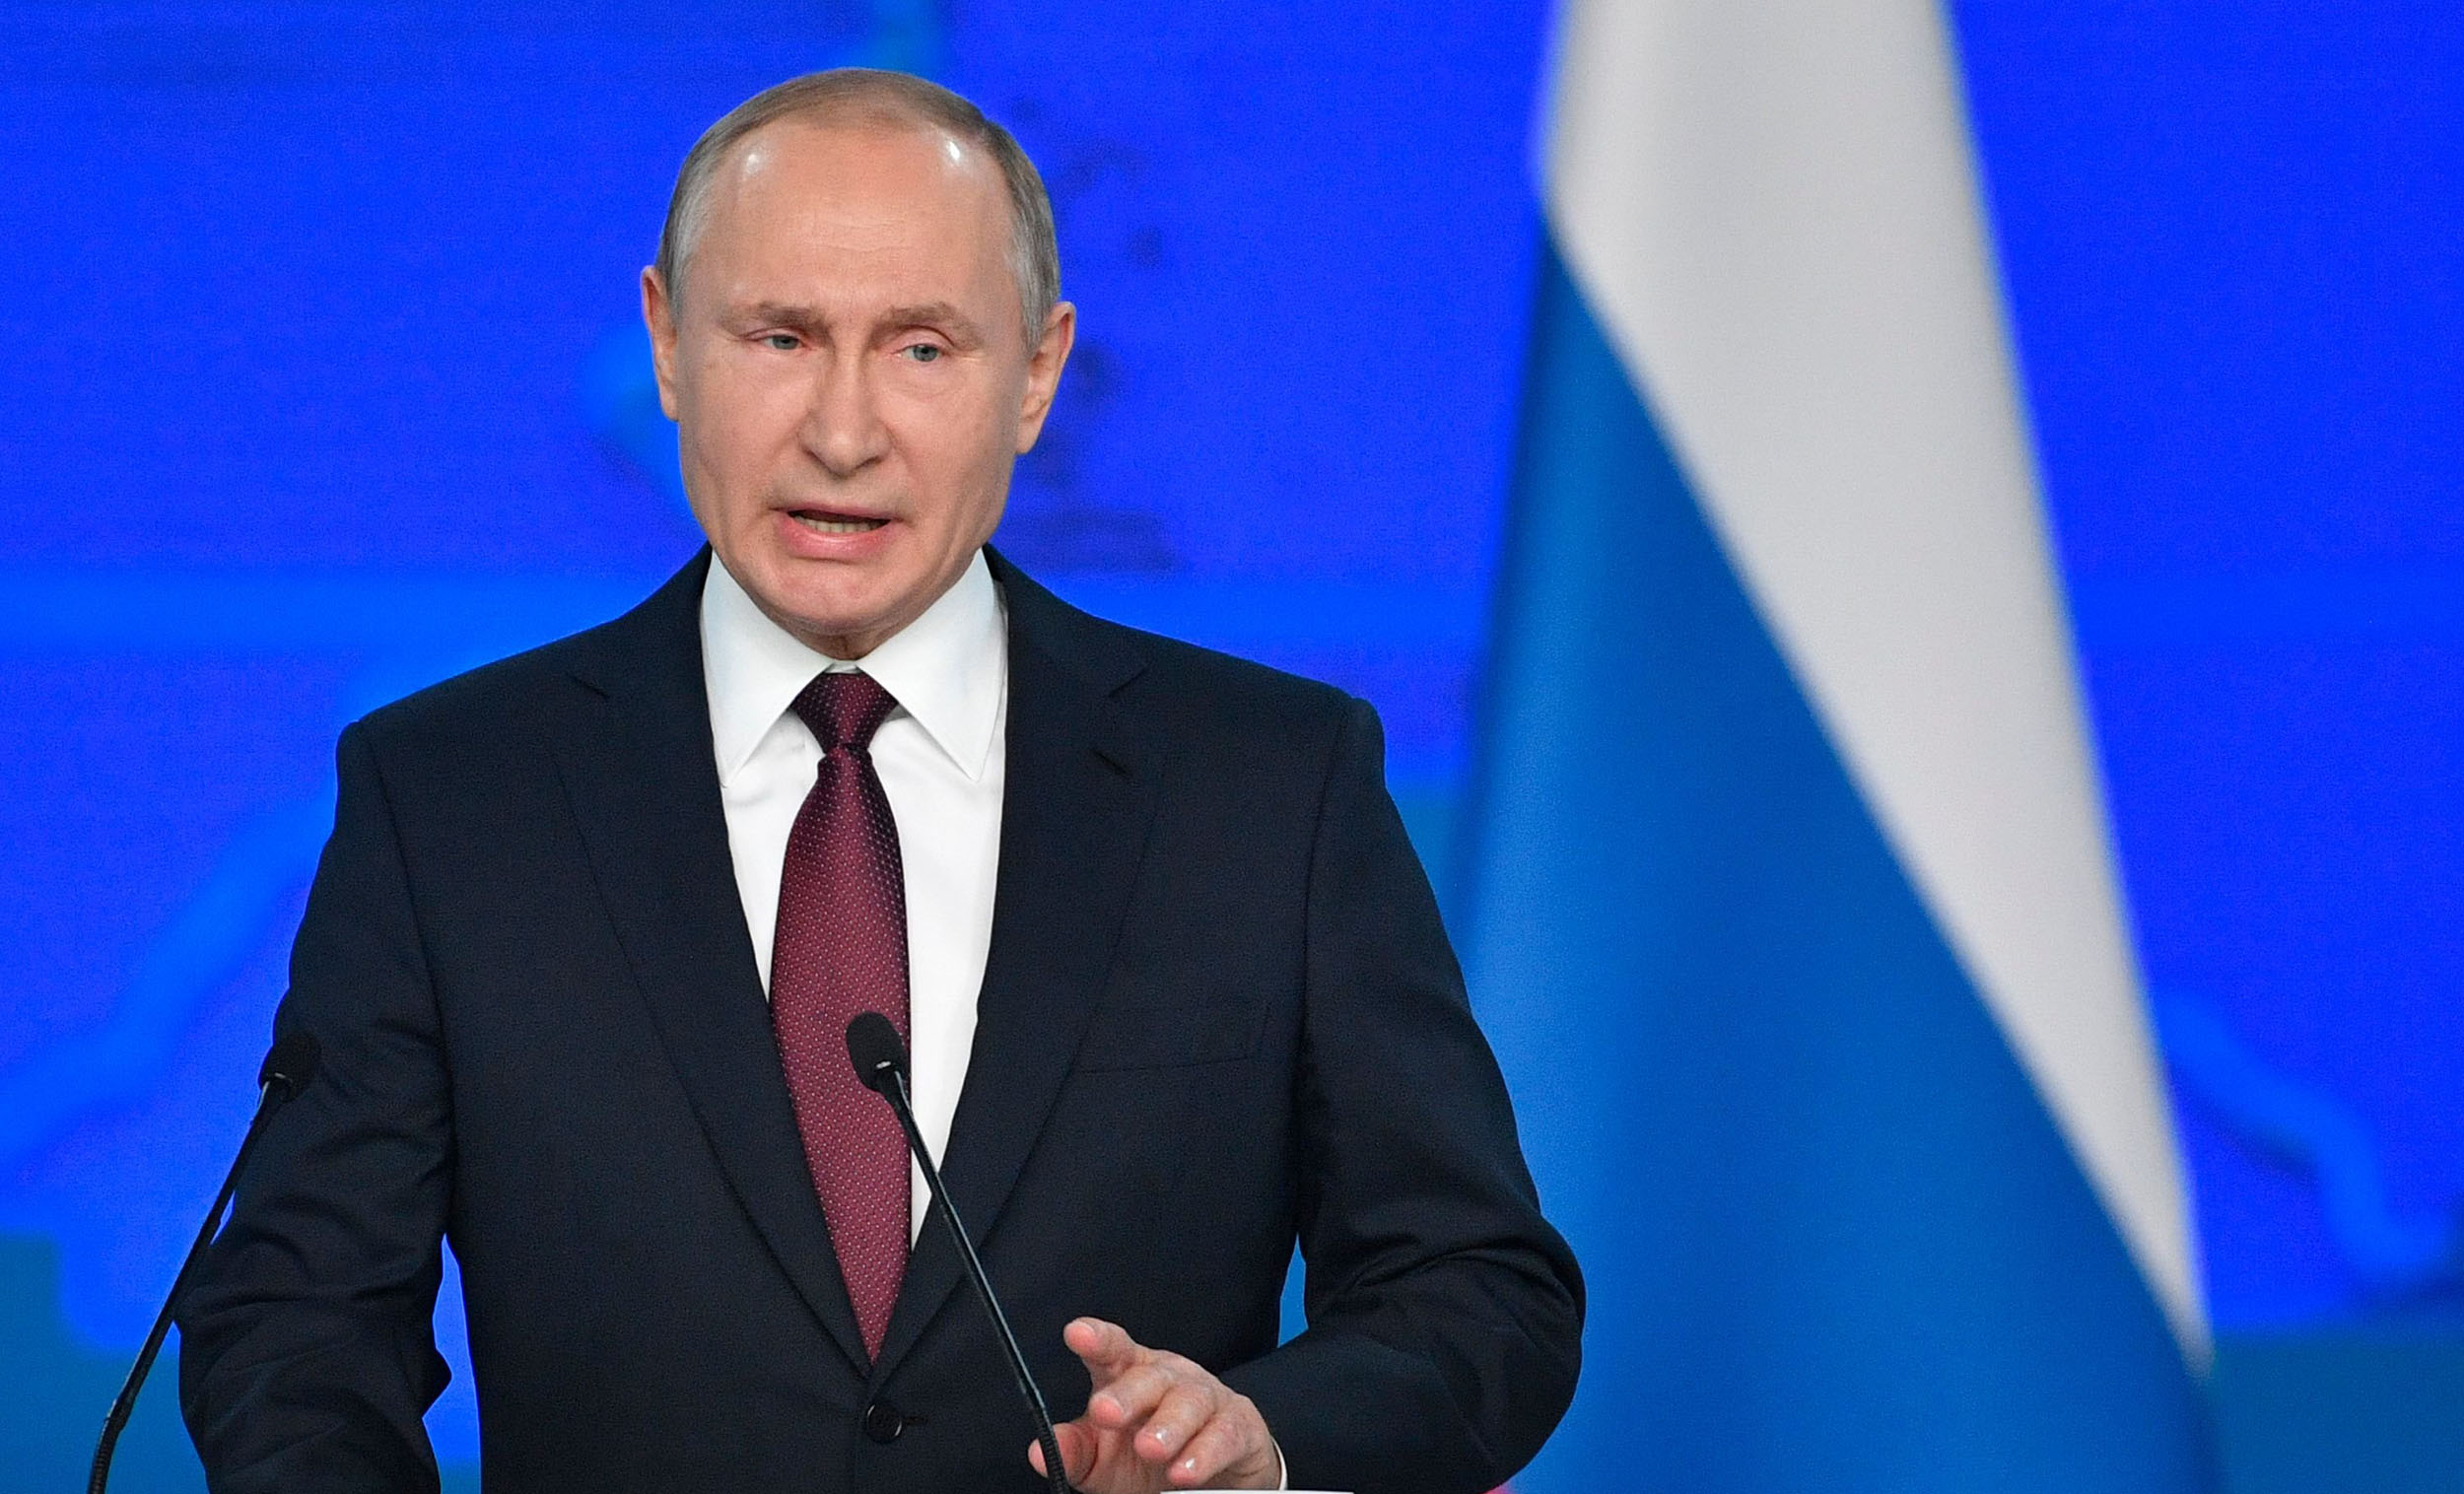 (VIDEO) Putin pred zvezno skupščino: Rusija ne želi vojne! Toda, če bo Amerika razvrstila rakete po Evropi, bo Rusija ravnala recipročno!